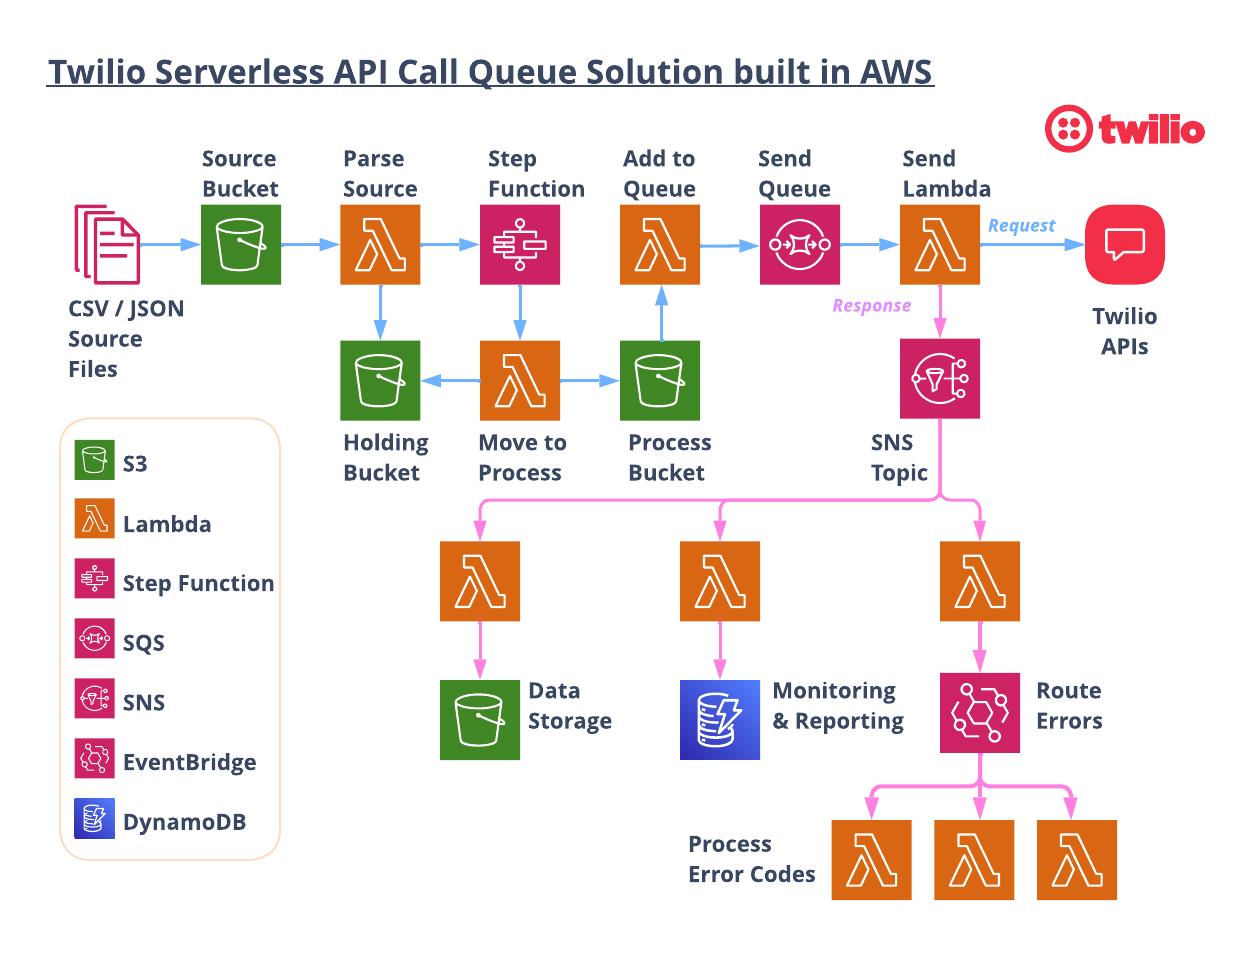 Twilio serverless API Call queueing solution architecture